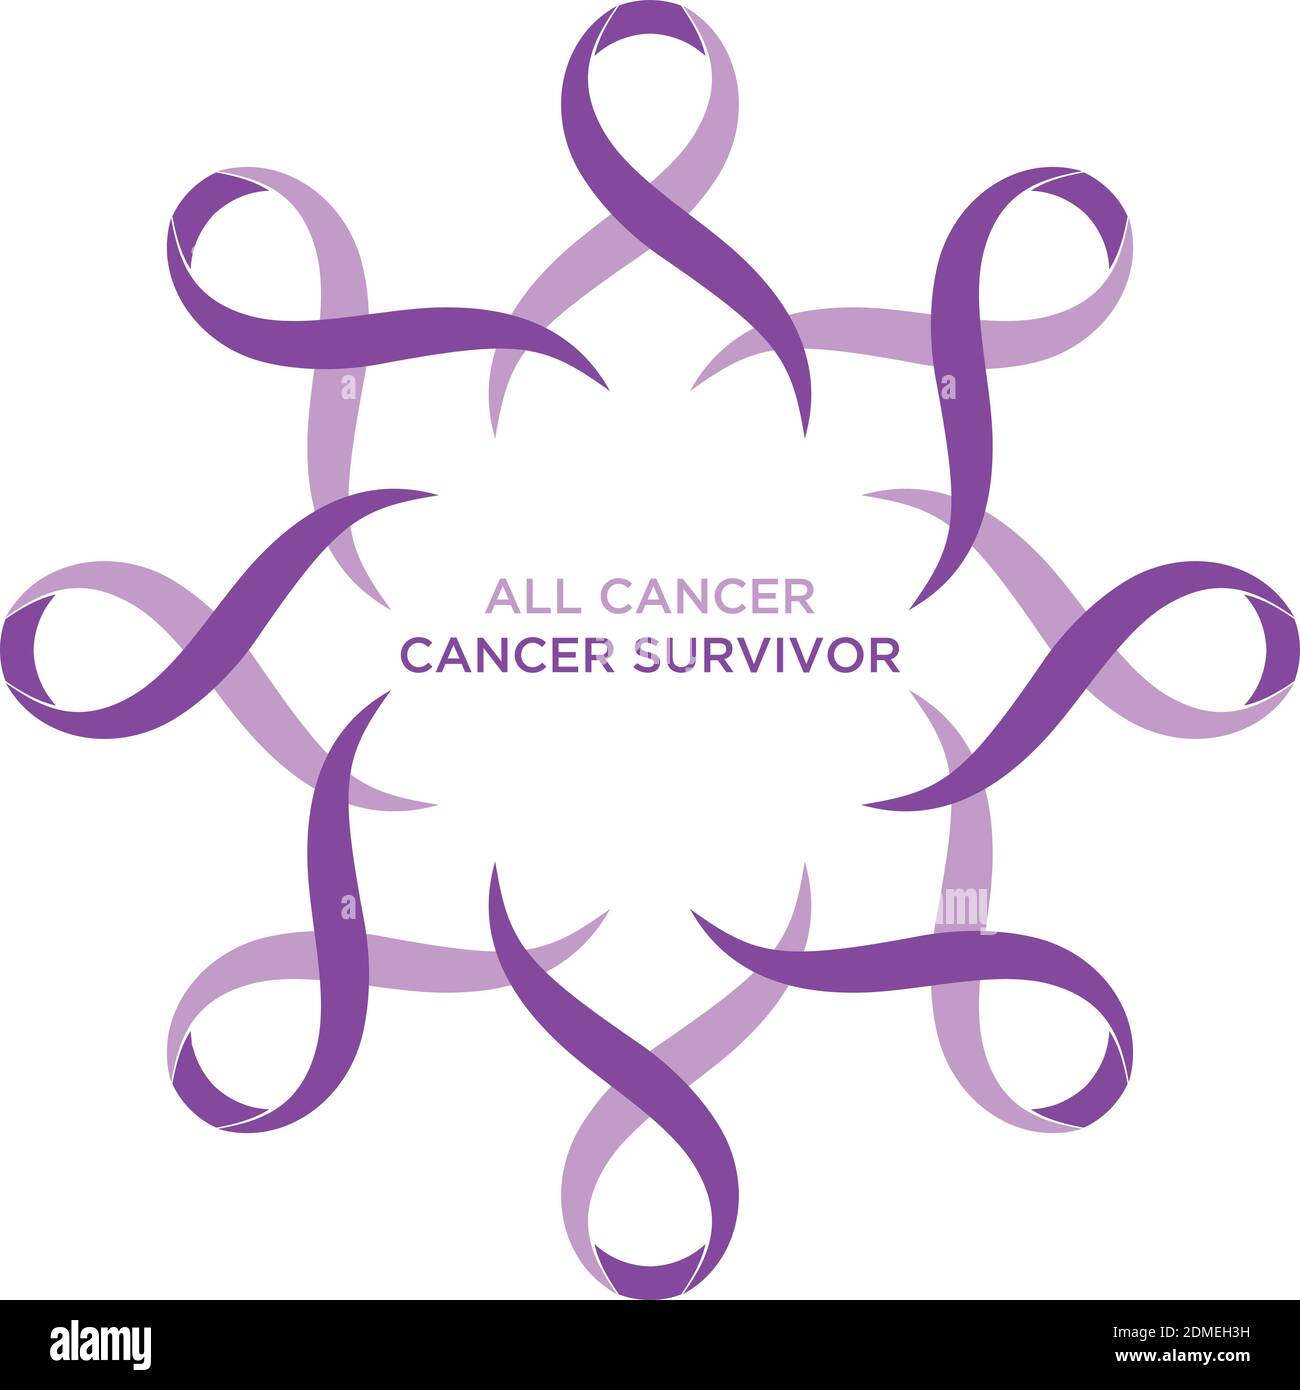 Krebsband Lavendel oder lila Farbe, die die Unterstützung der Bekämpfung von Krebs. Die Bänder kreisförmig als Symbol des Krebses. Vektorgrafik E Stock Vektor